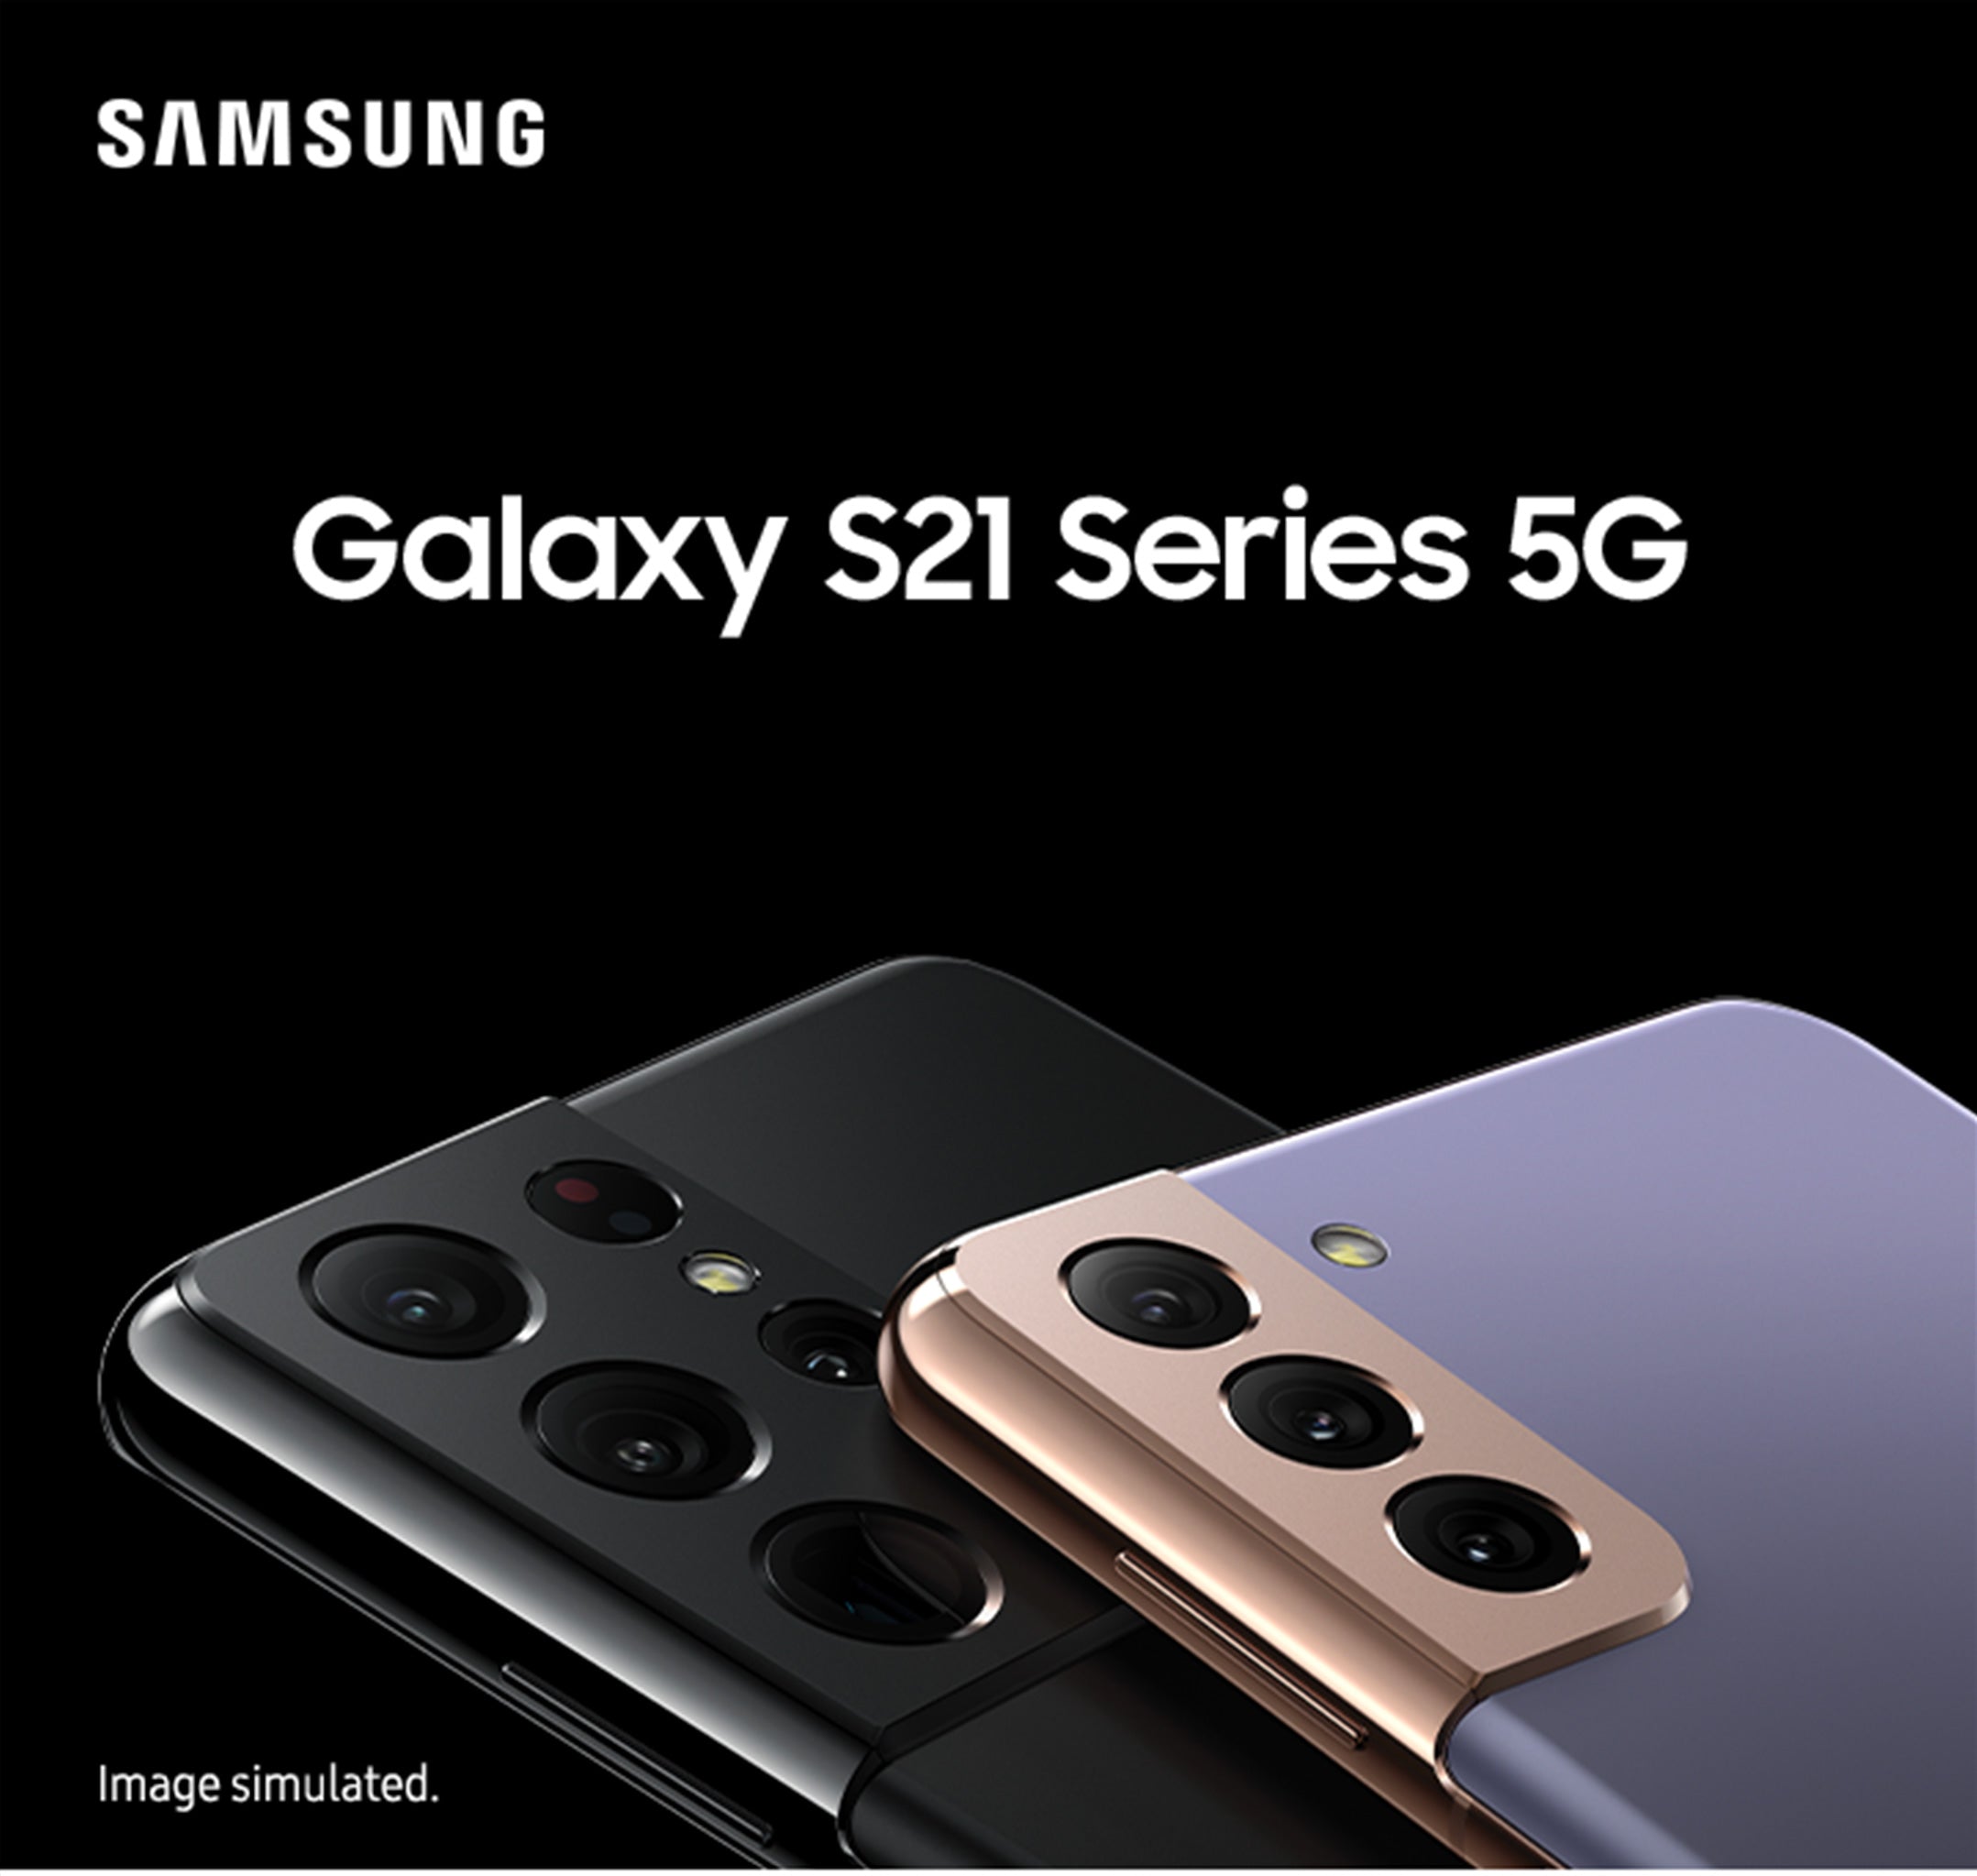 Samsung Galaxy S21 + Galaxy S21 Ultra 5G At JB Hi-Fi